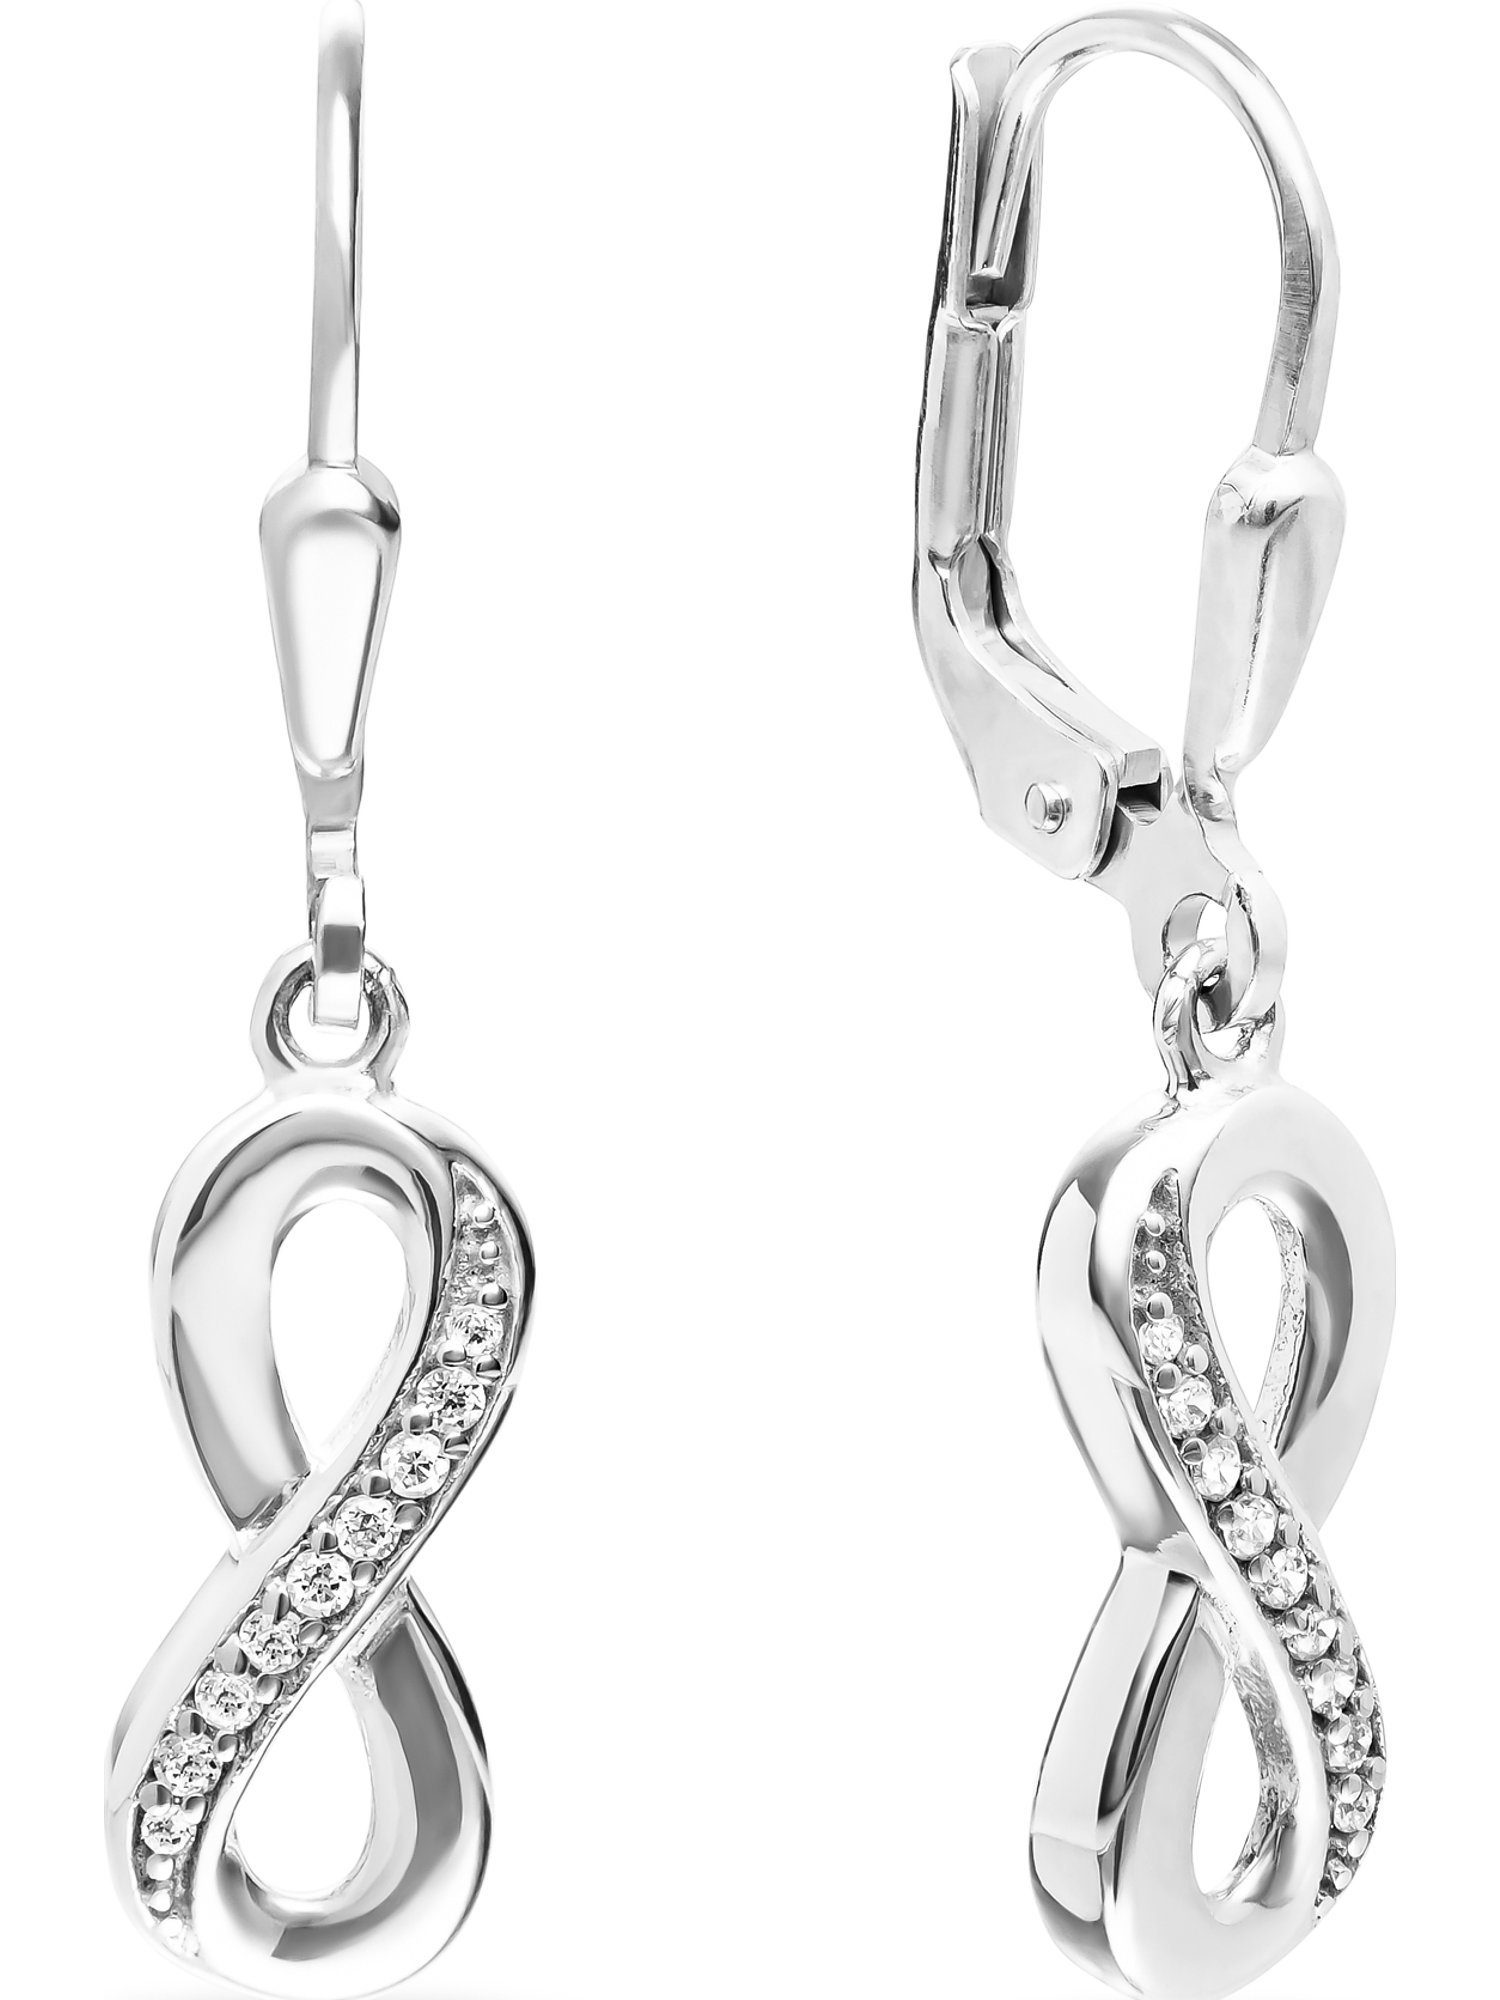 Preis und Auswahl an FAVS Paar Ohrhänger FAVS Silber Damen-Ohrhänger 925er 18 Zirkonia